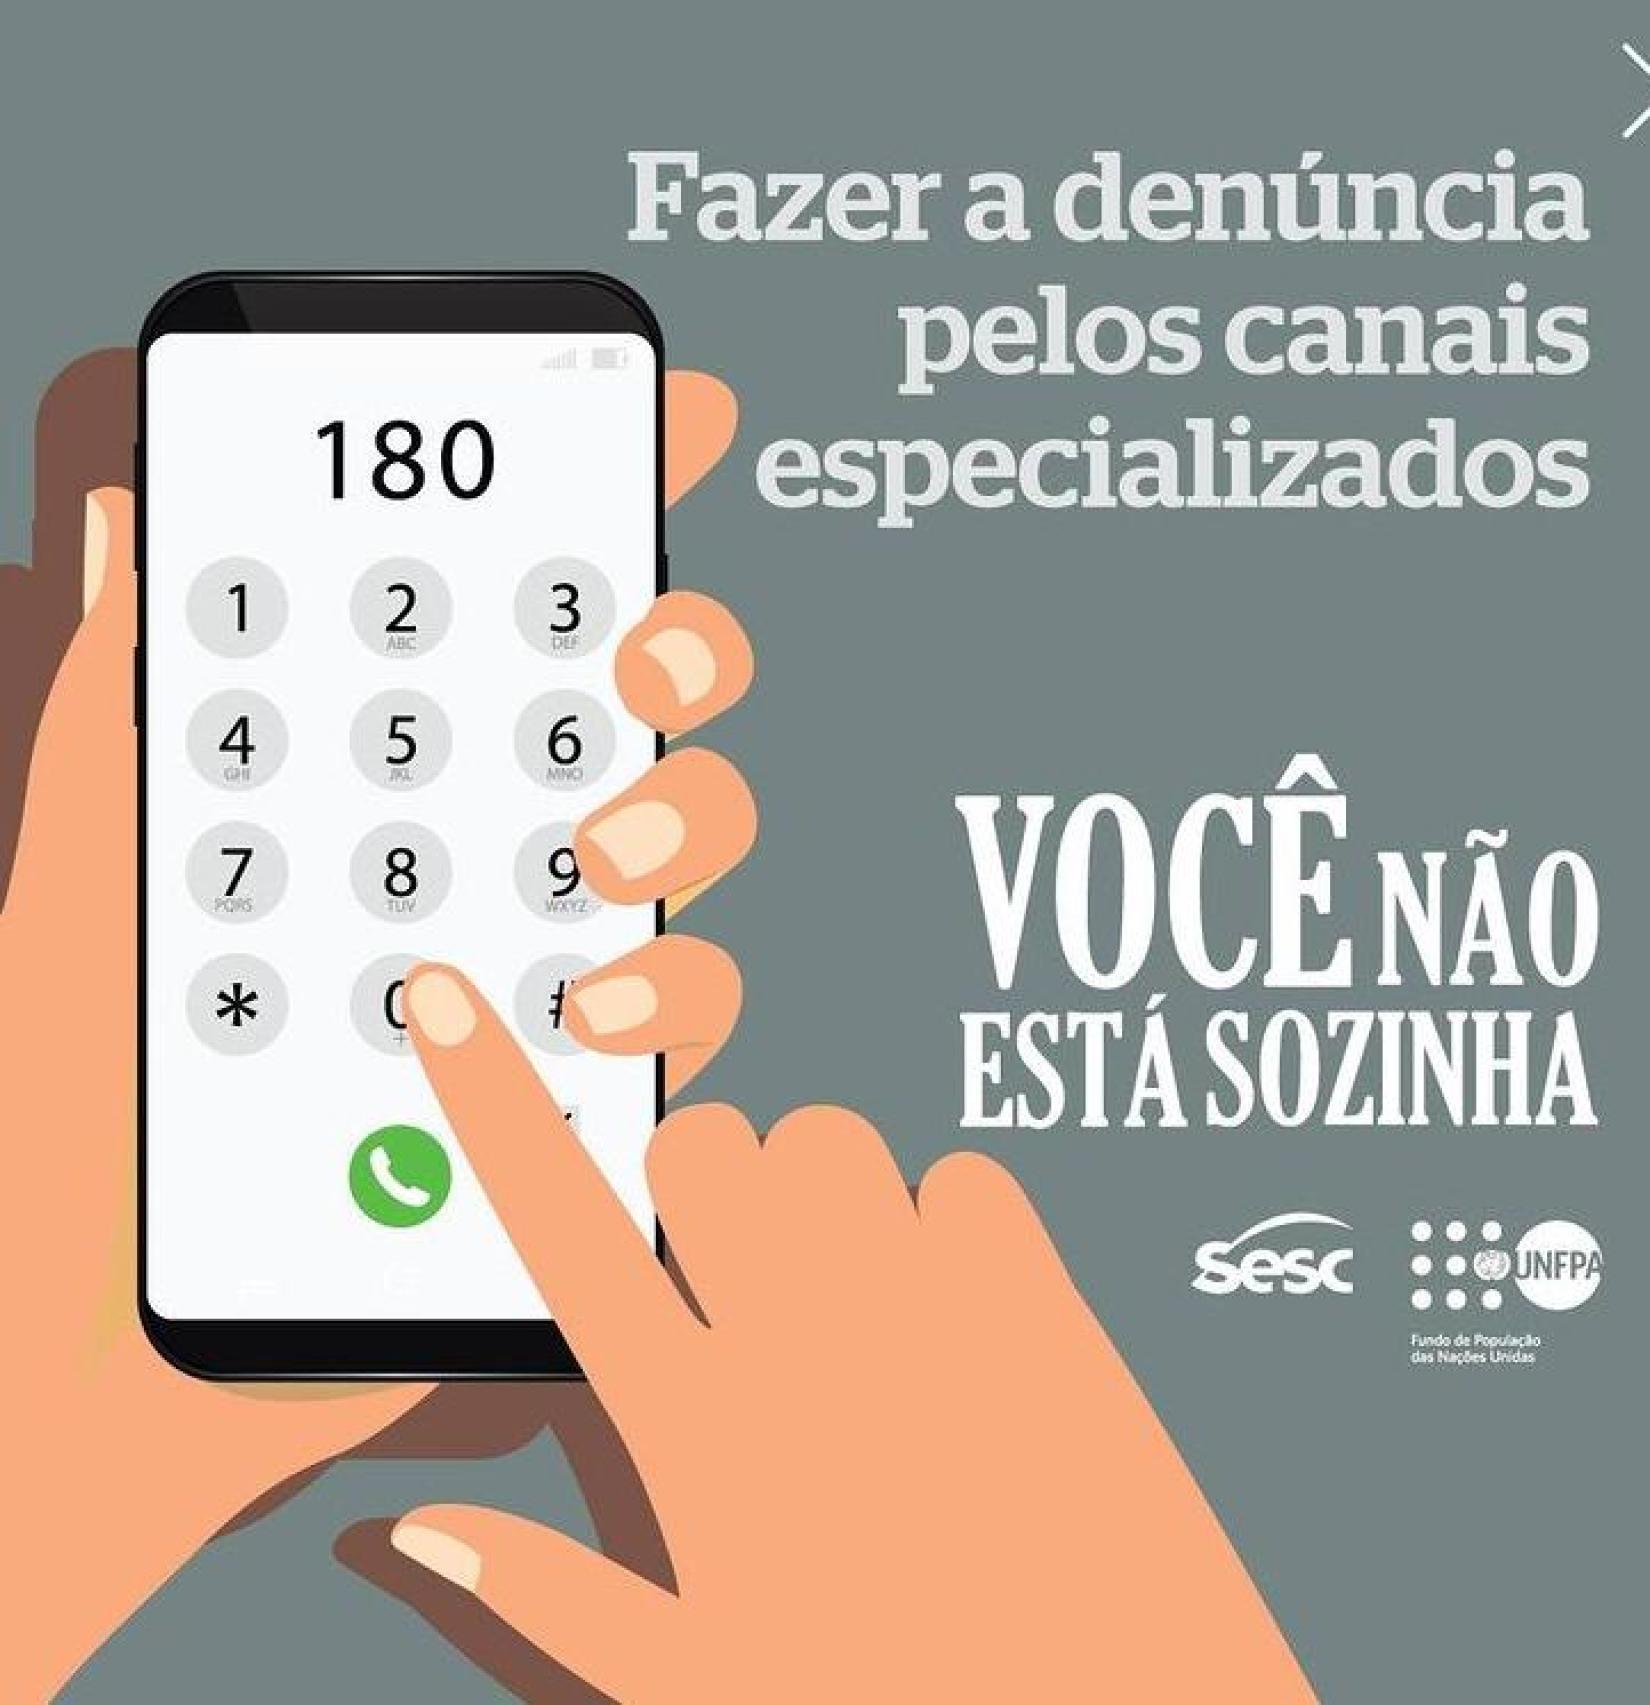 "Você não está sozinha", é fruto da parceria do Sesc e UNFPA Brasil no combate a violência de gênero em todo o país.